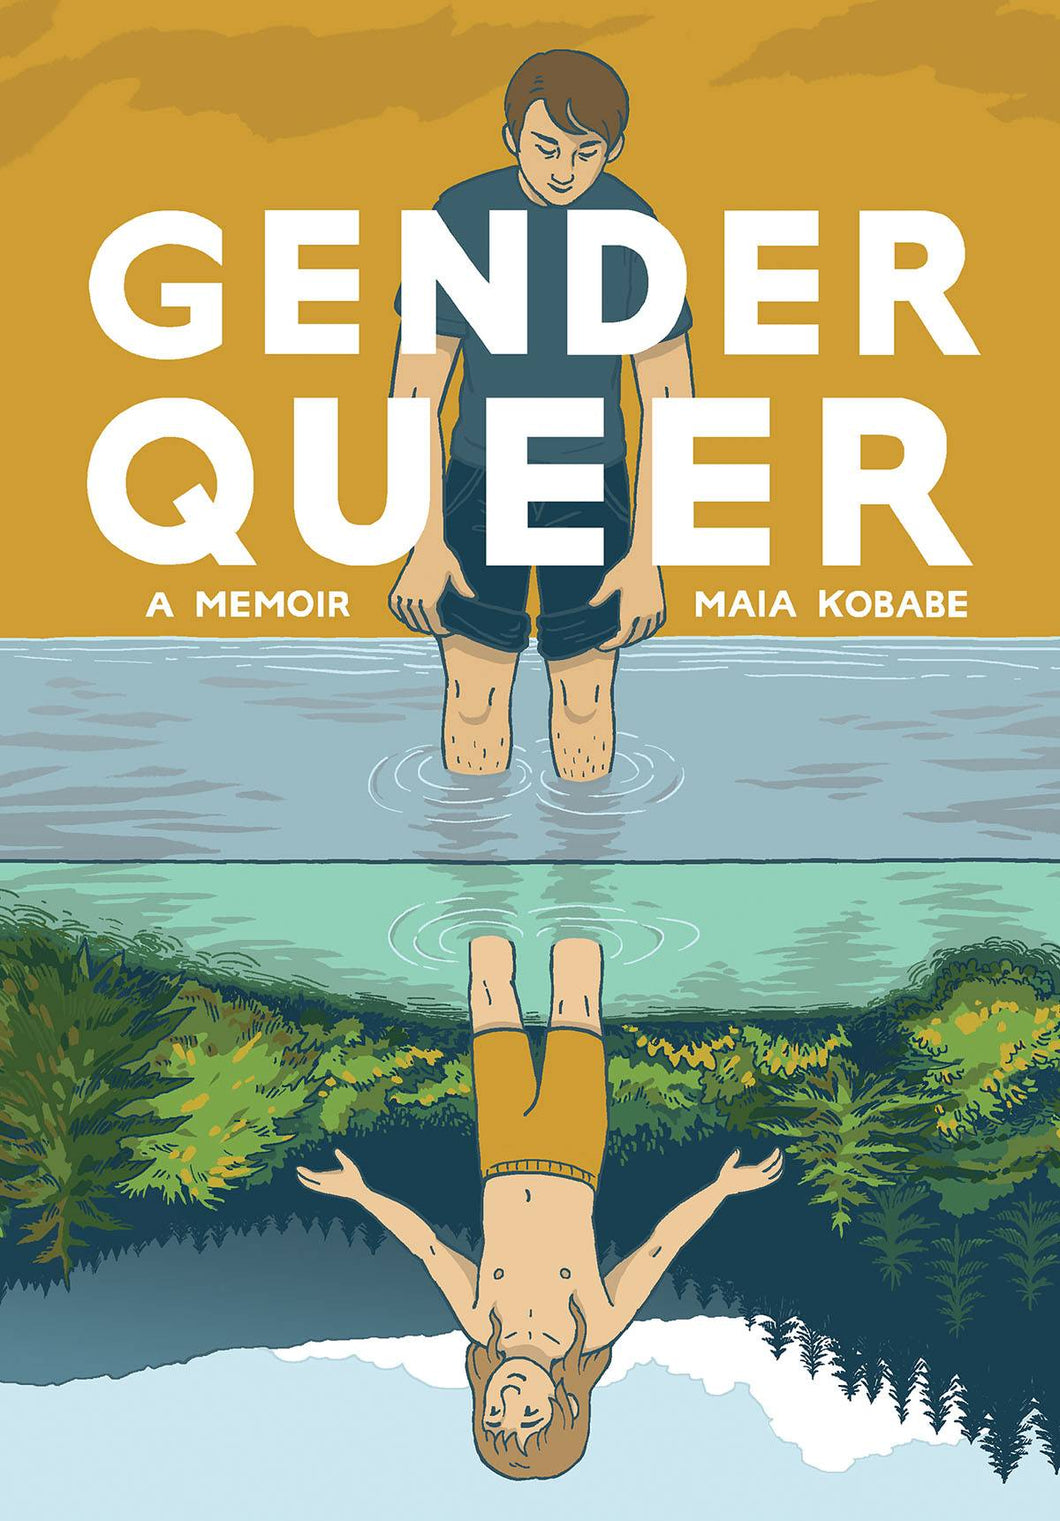 Gender Queer Memoir GN - Books